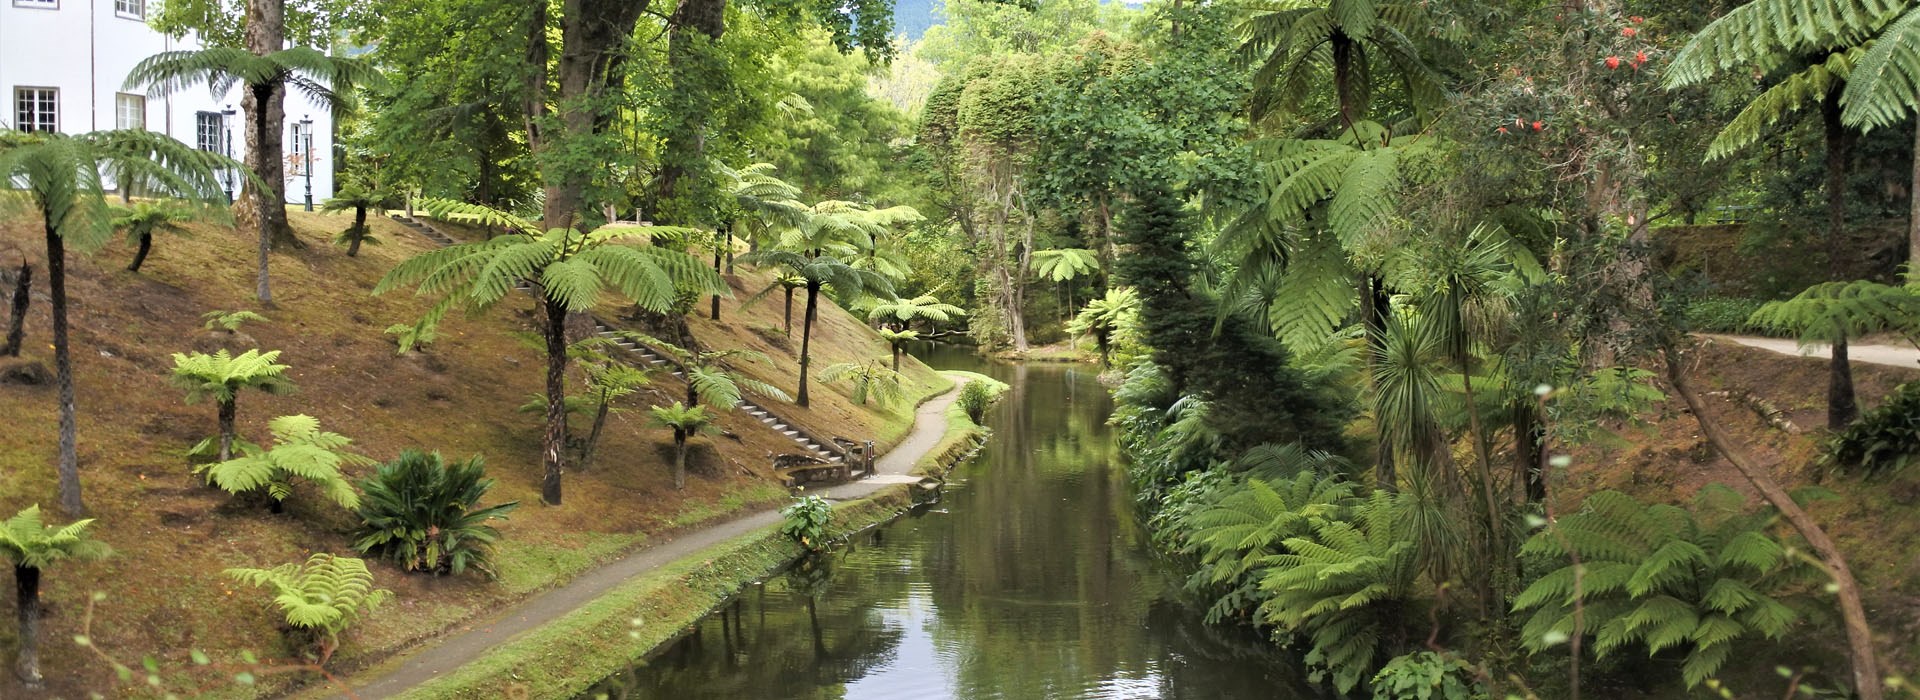 Visiter Le parc de Terra Nostra - Açores